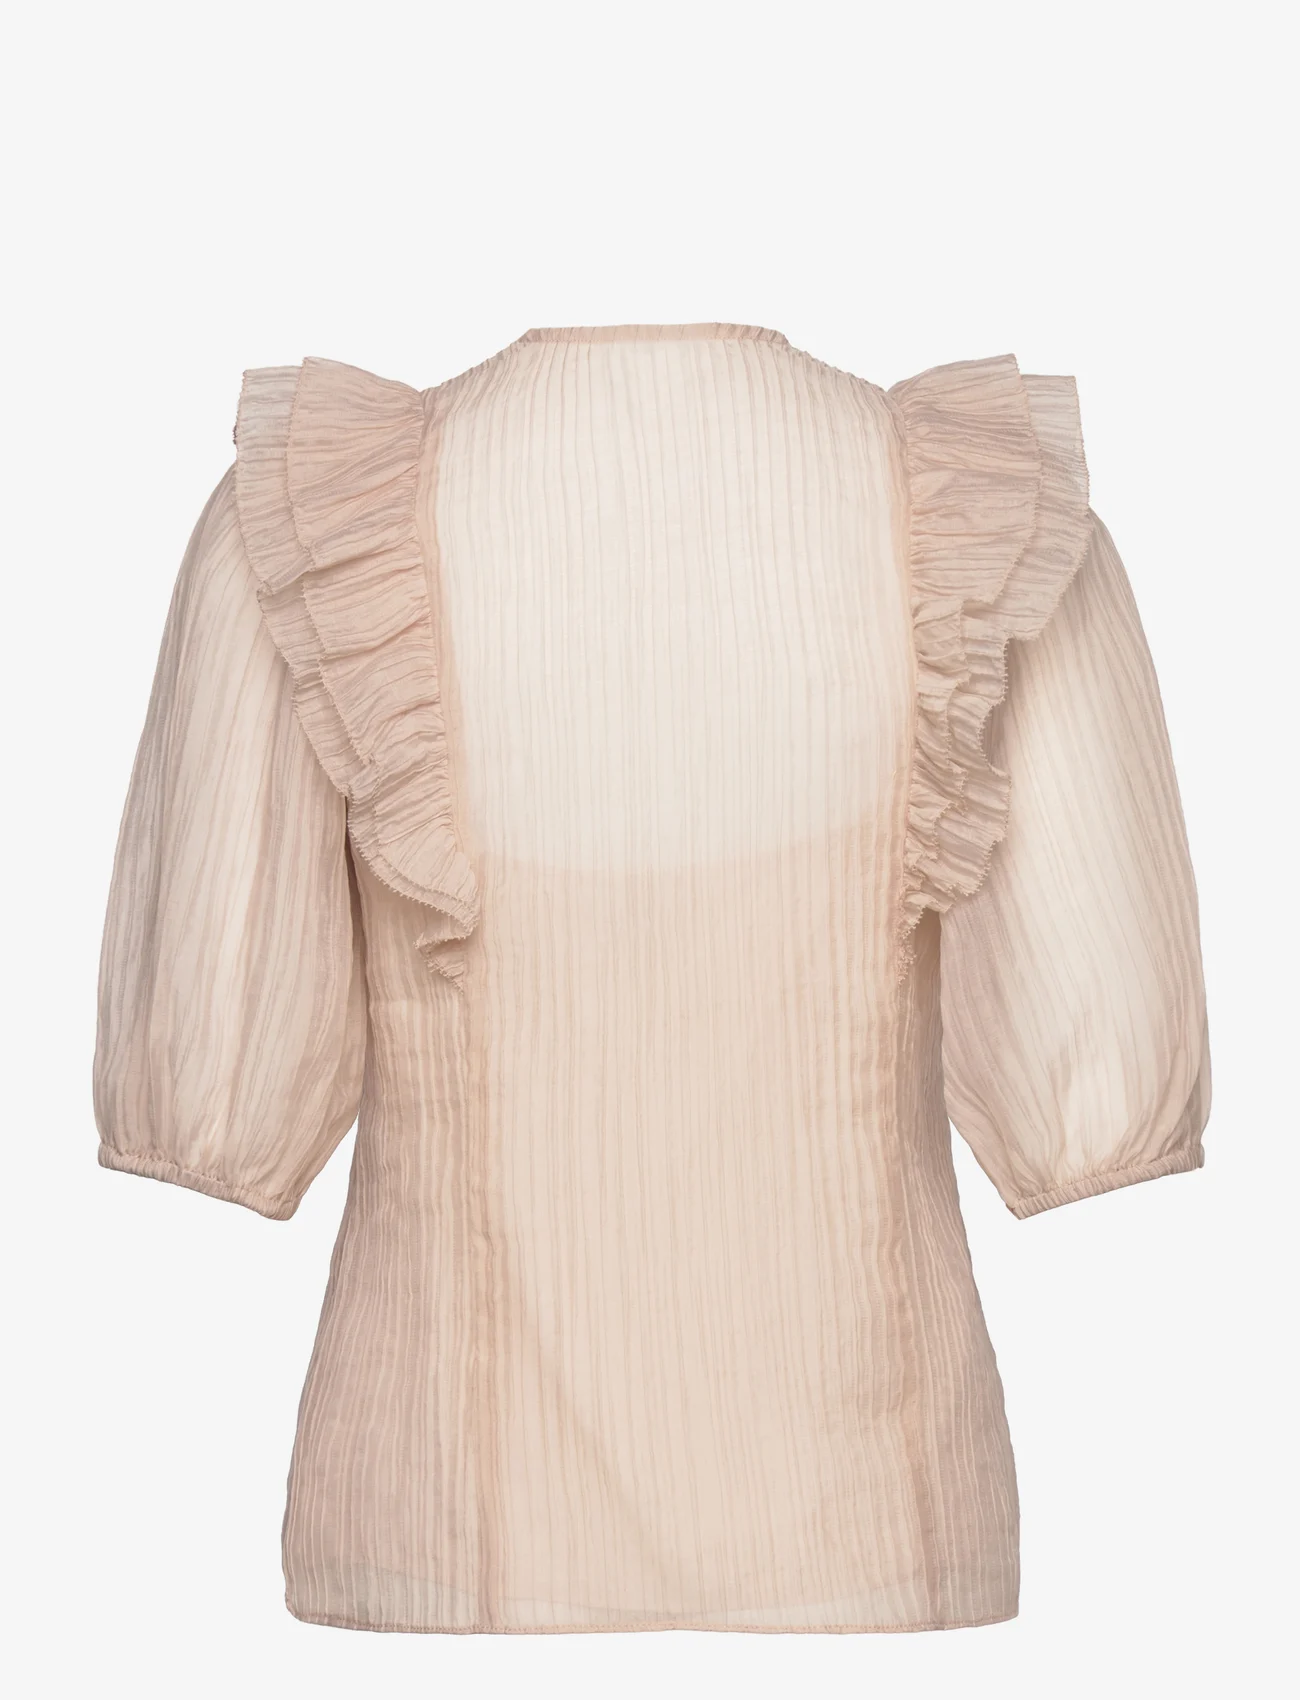 Dante6 - Verushka crinkle jaquard top - short-sleeved blouses - oyster cream - 1